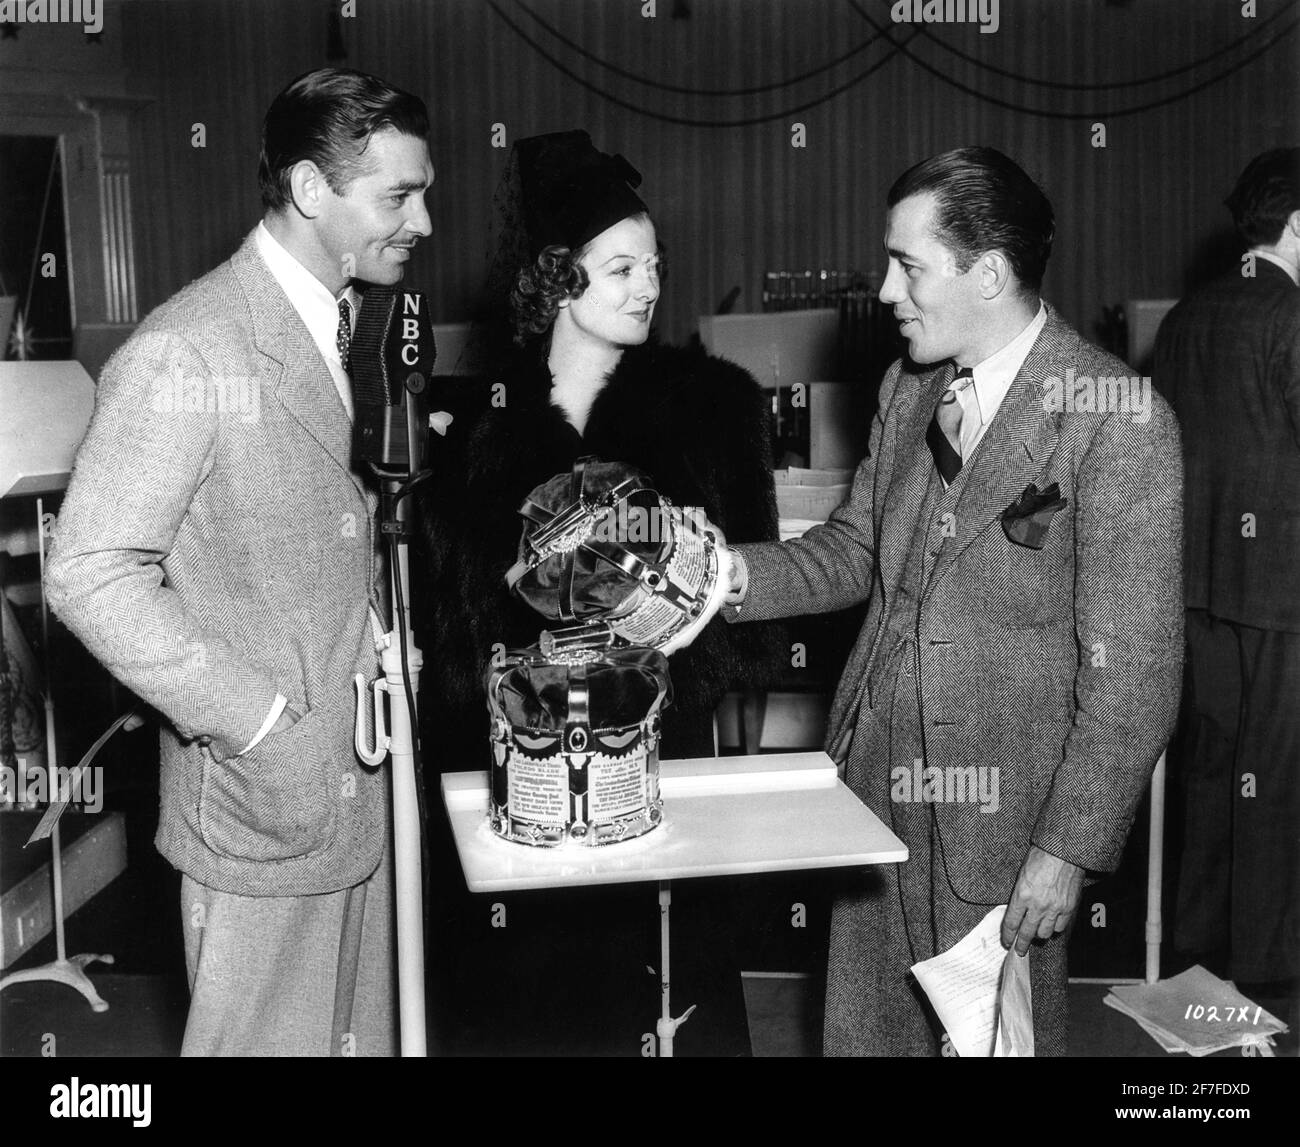 CLARK GABLE und MYRNA LOY werden zum König und zur Königin gekrönt Von Hollywood durch den Kolumnist ED SULLIVAN auf NBC Radio in Dezember 1937 Werbung für Metro Goldwyn Mayer Stockfoto